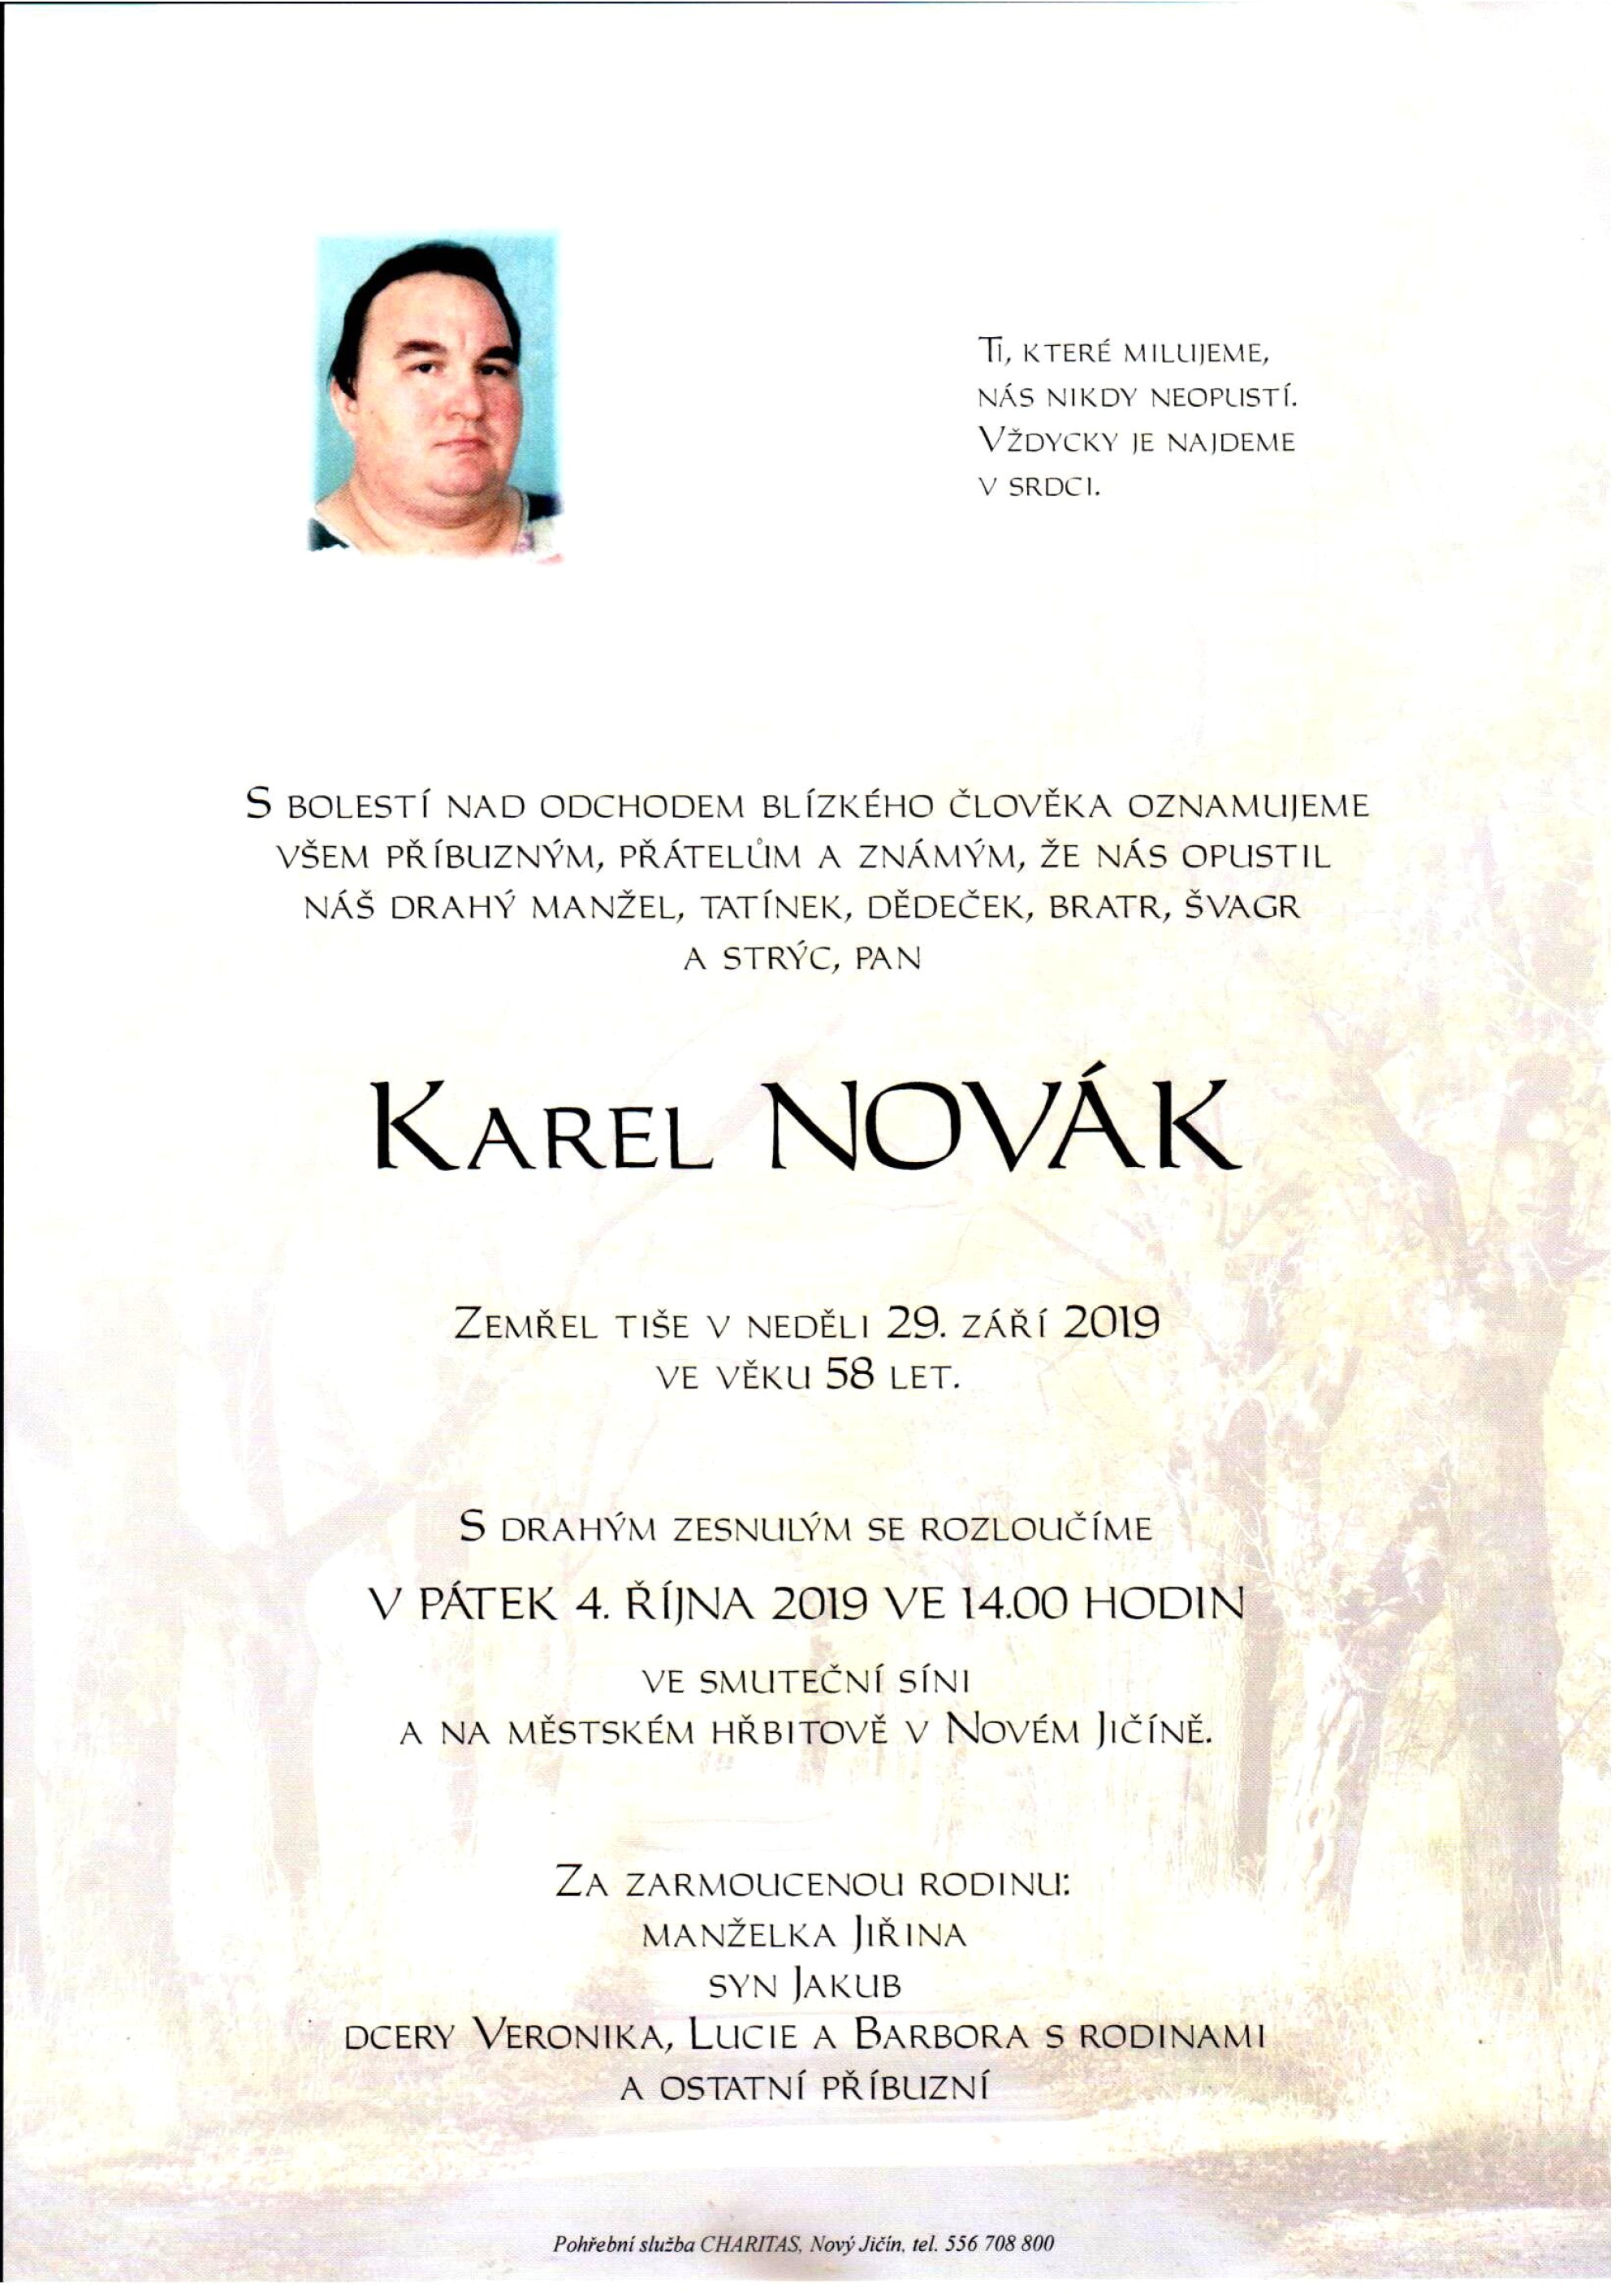 Karel Novák